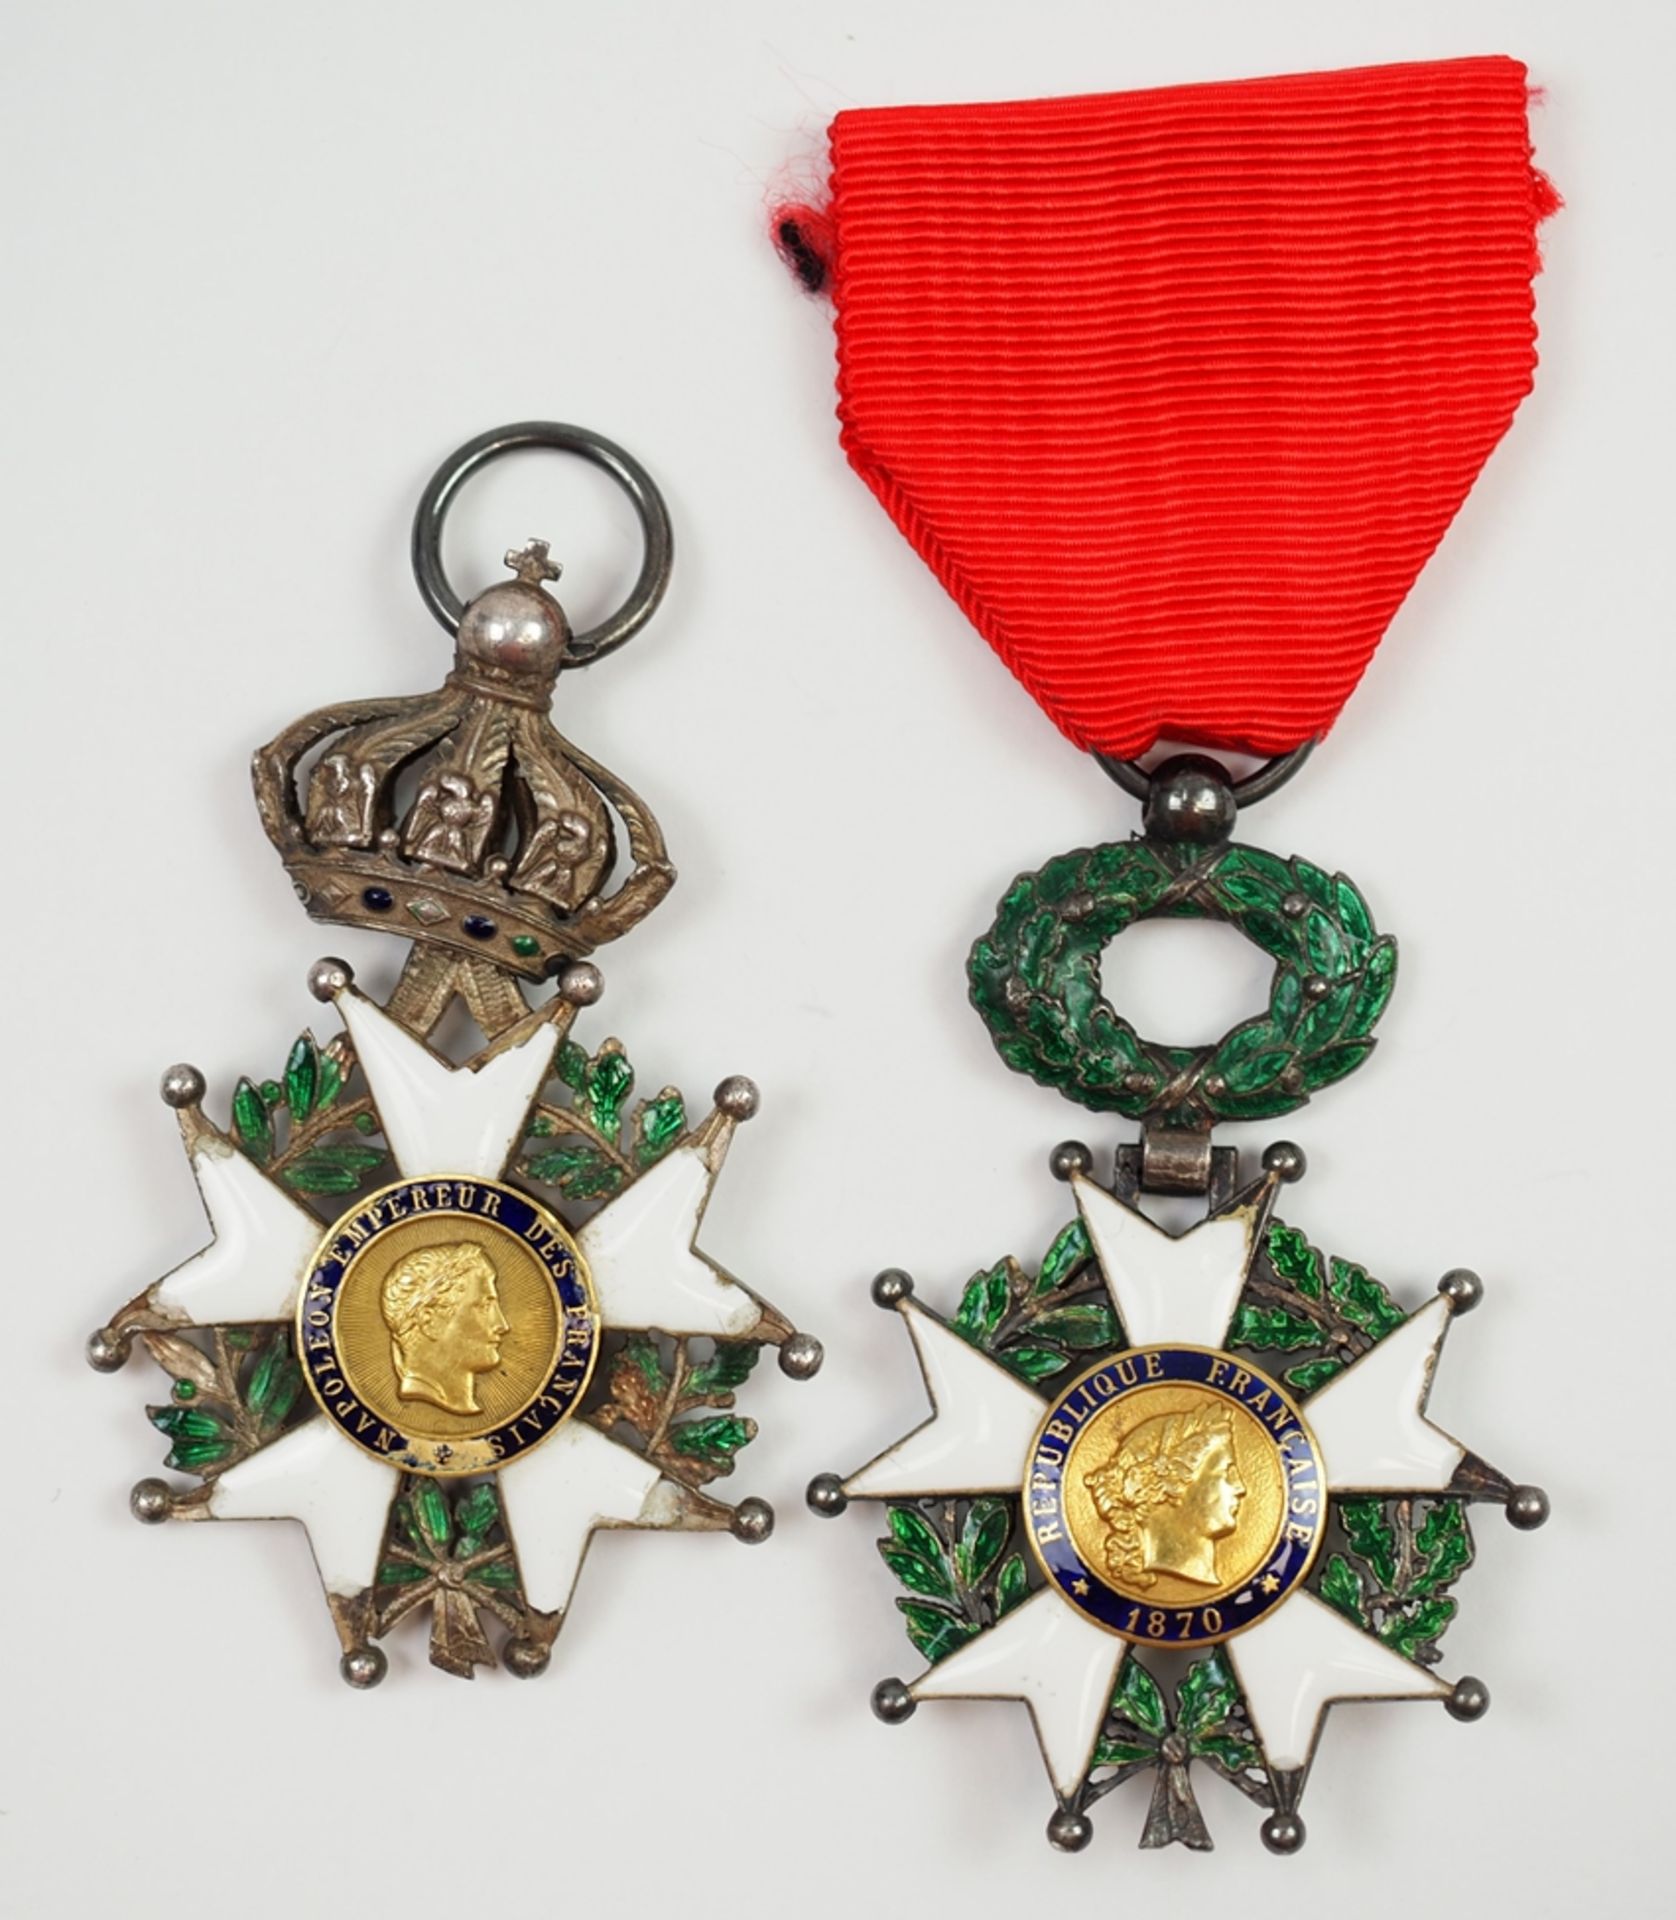 Frankreich: Orden der Ehrenlegion, Ritterkreuz - 2 Exemplare.